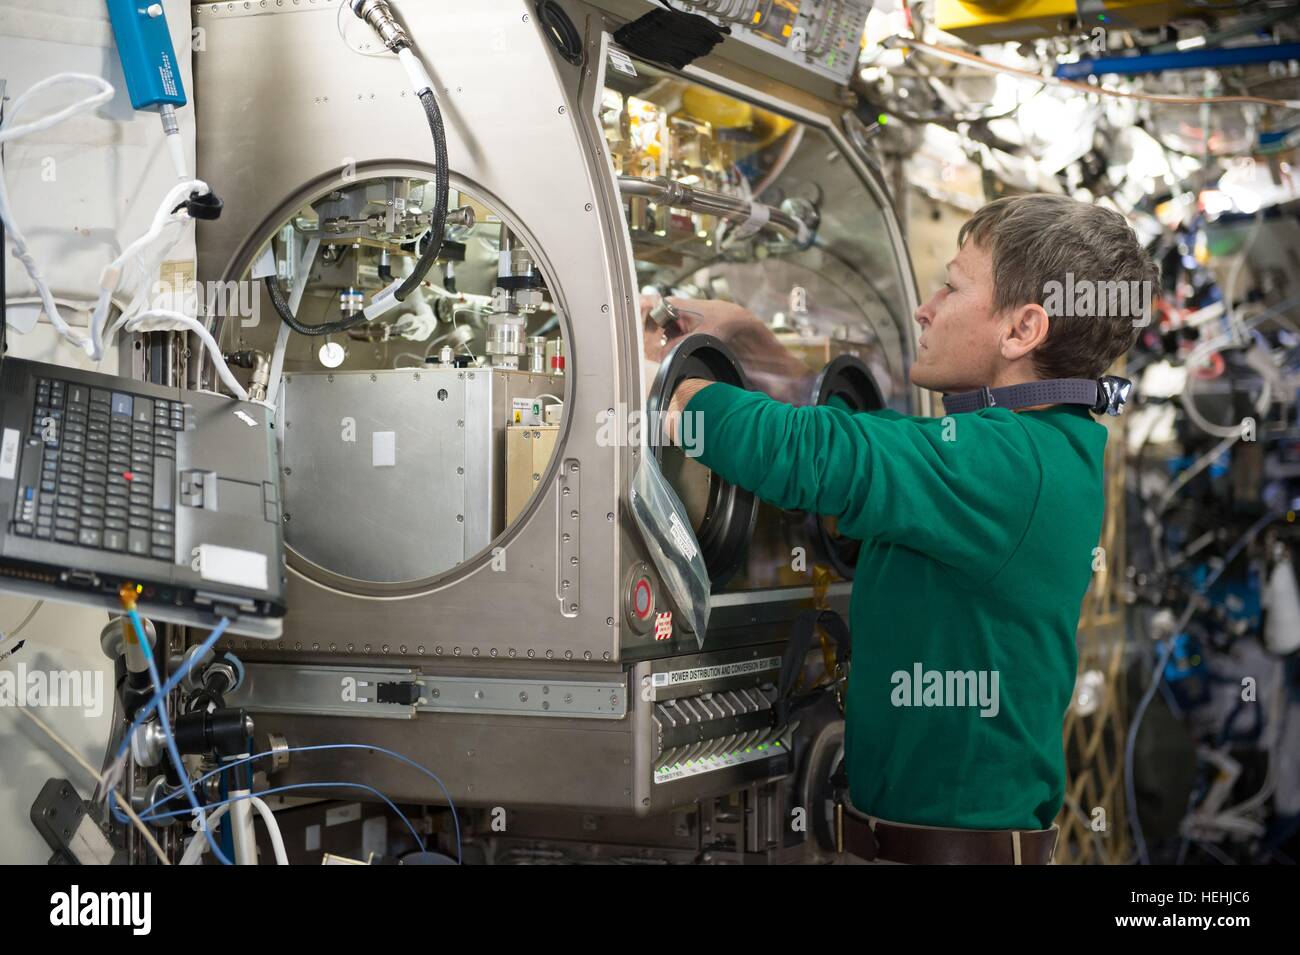 La NASA Expedition 50 primo equipaggio astronauta Peggy Whitson imposta il letto impaccato esperimento reattore all'interno della Stazione Spaziale Internazionale Microgravity Science Glovebox 1 dicembre 2016 in orbita intorno alla terra. Foto Stock